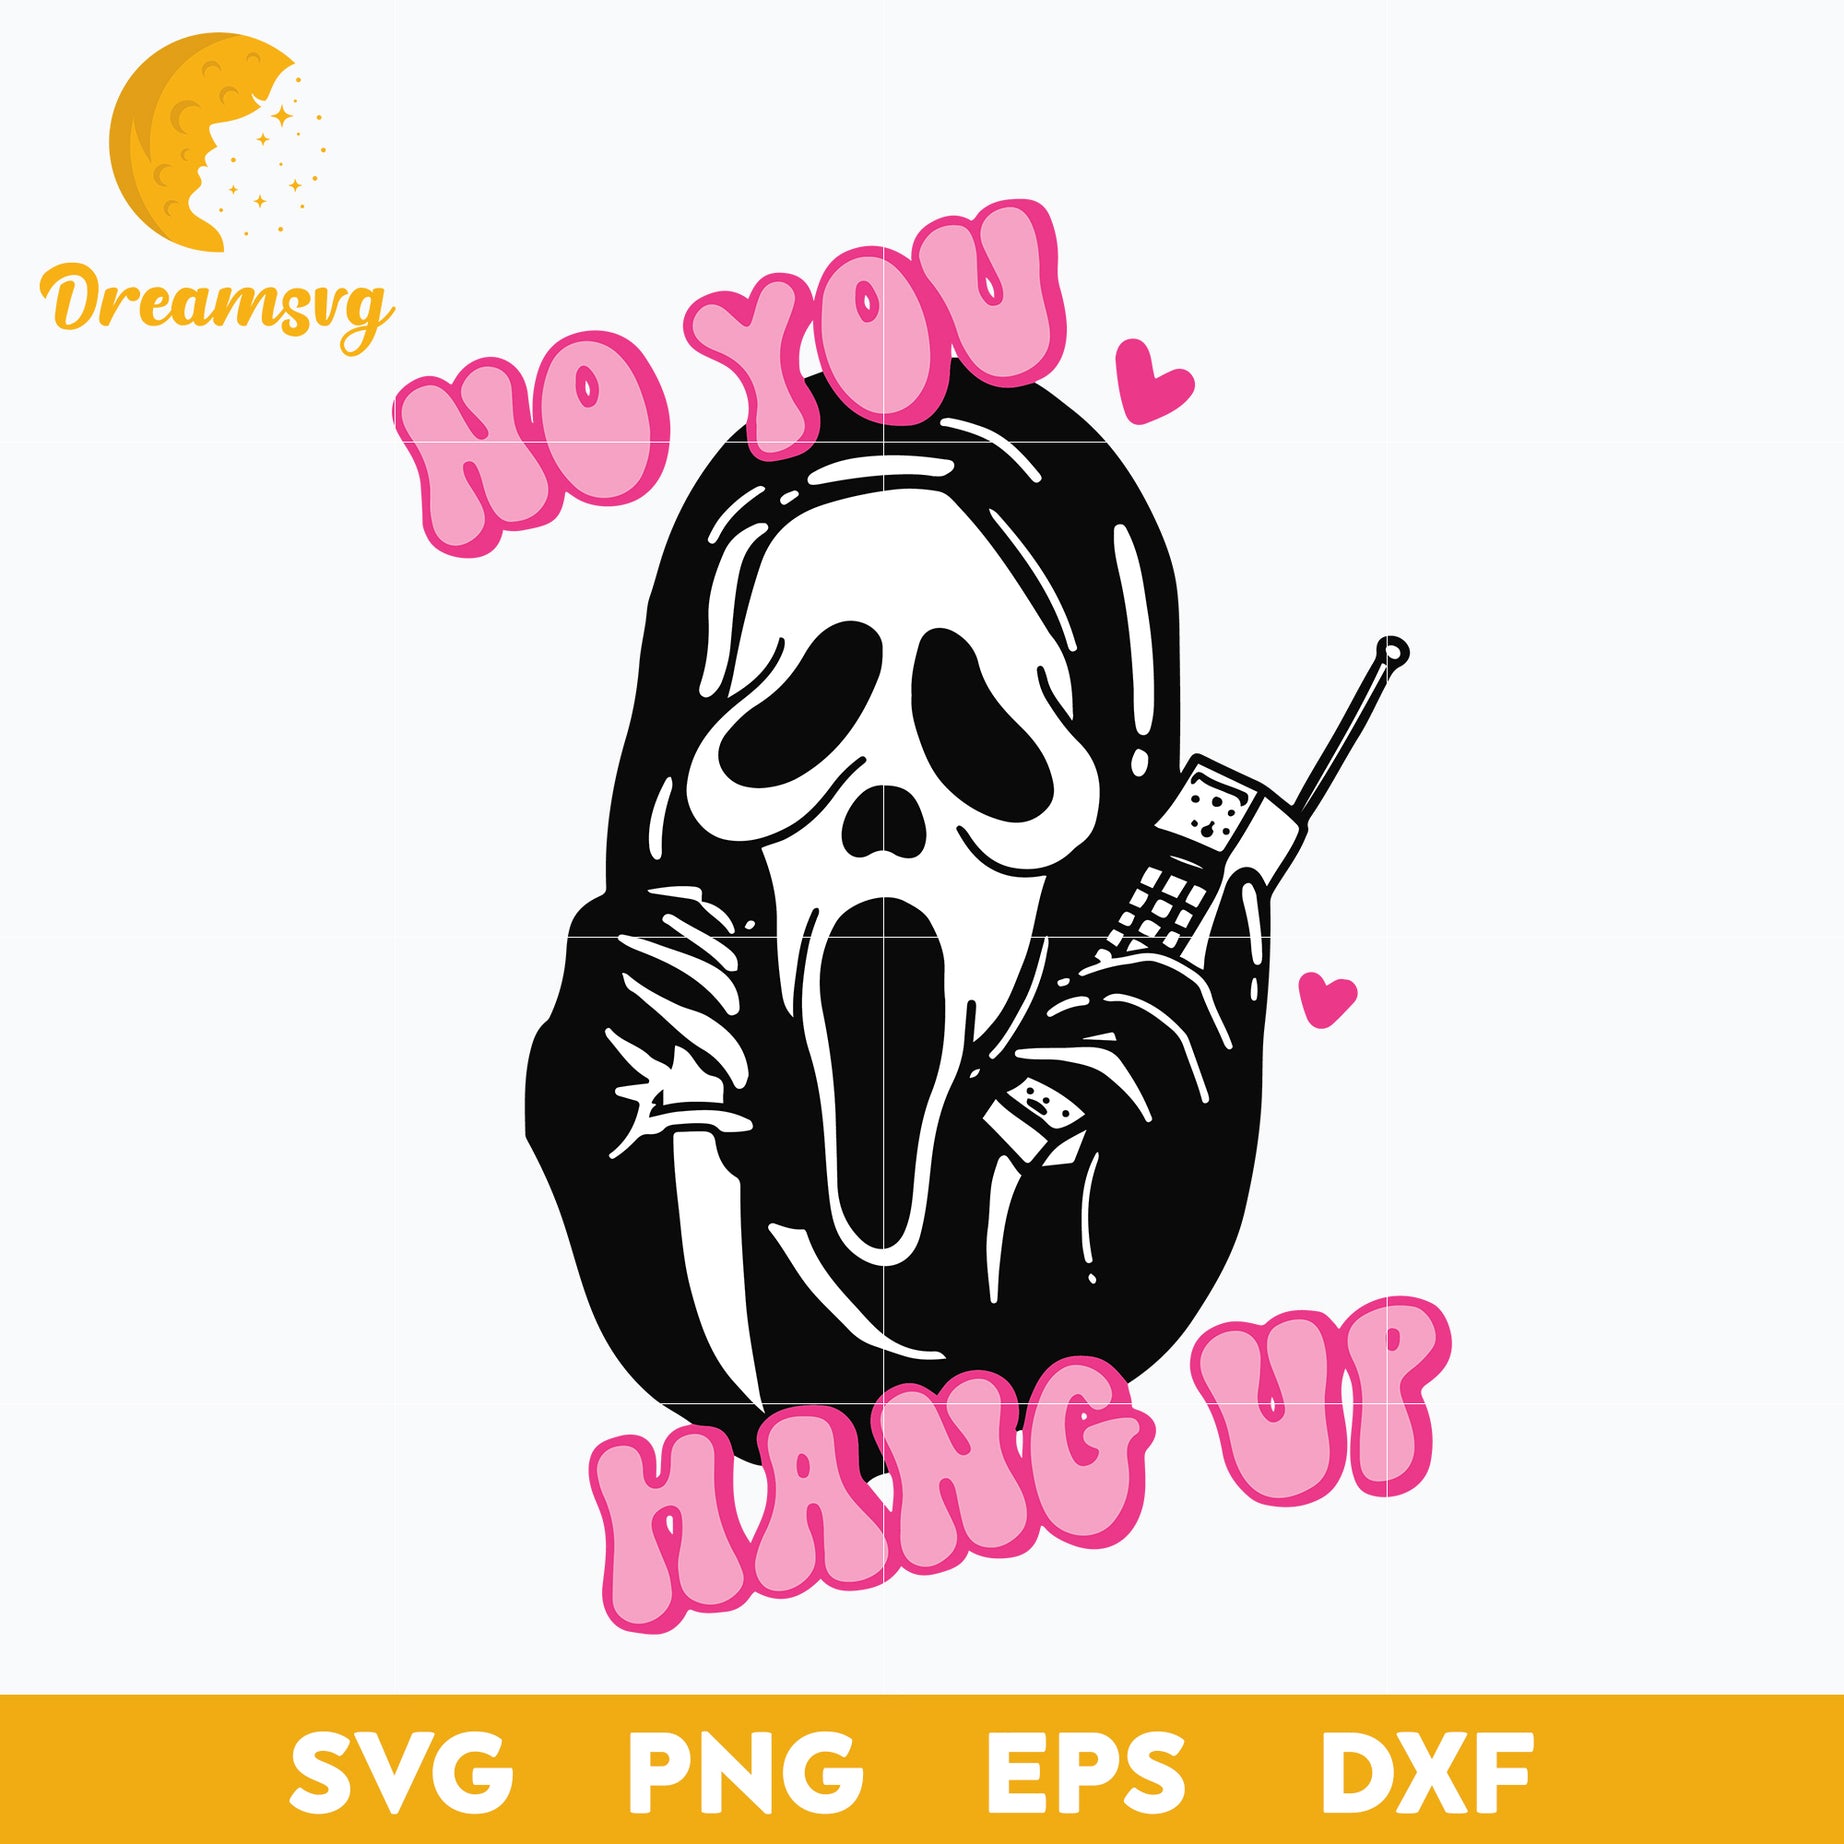 No You Hang Up Svg, Scream Svg, Ghostface Svg, Halloween Svg, png, dxf, eps digital file.